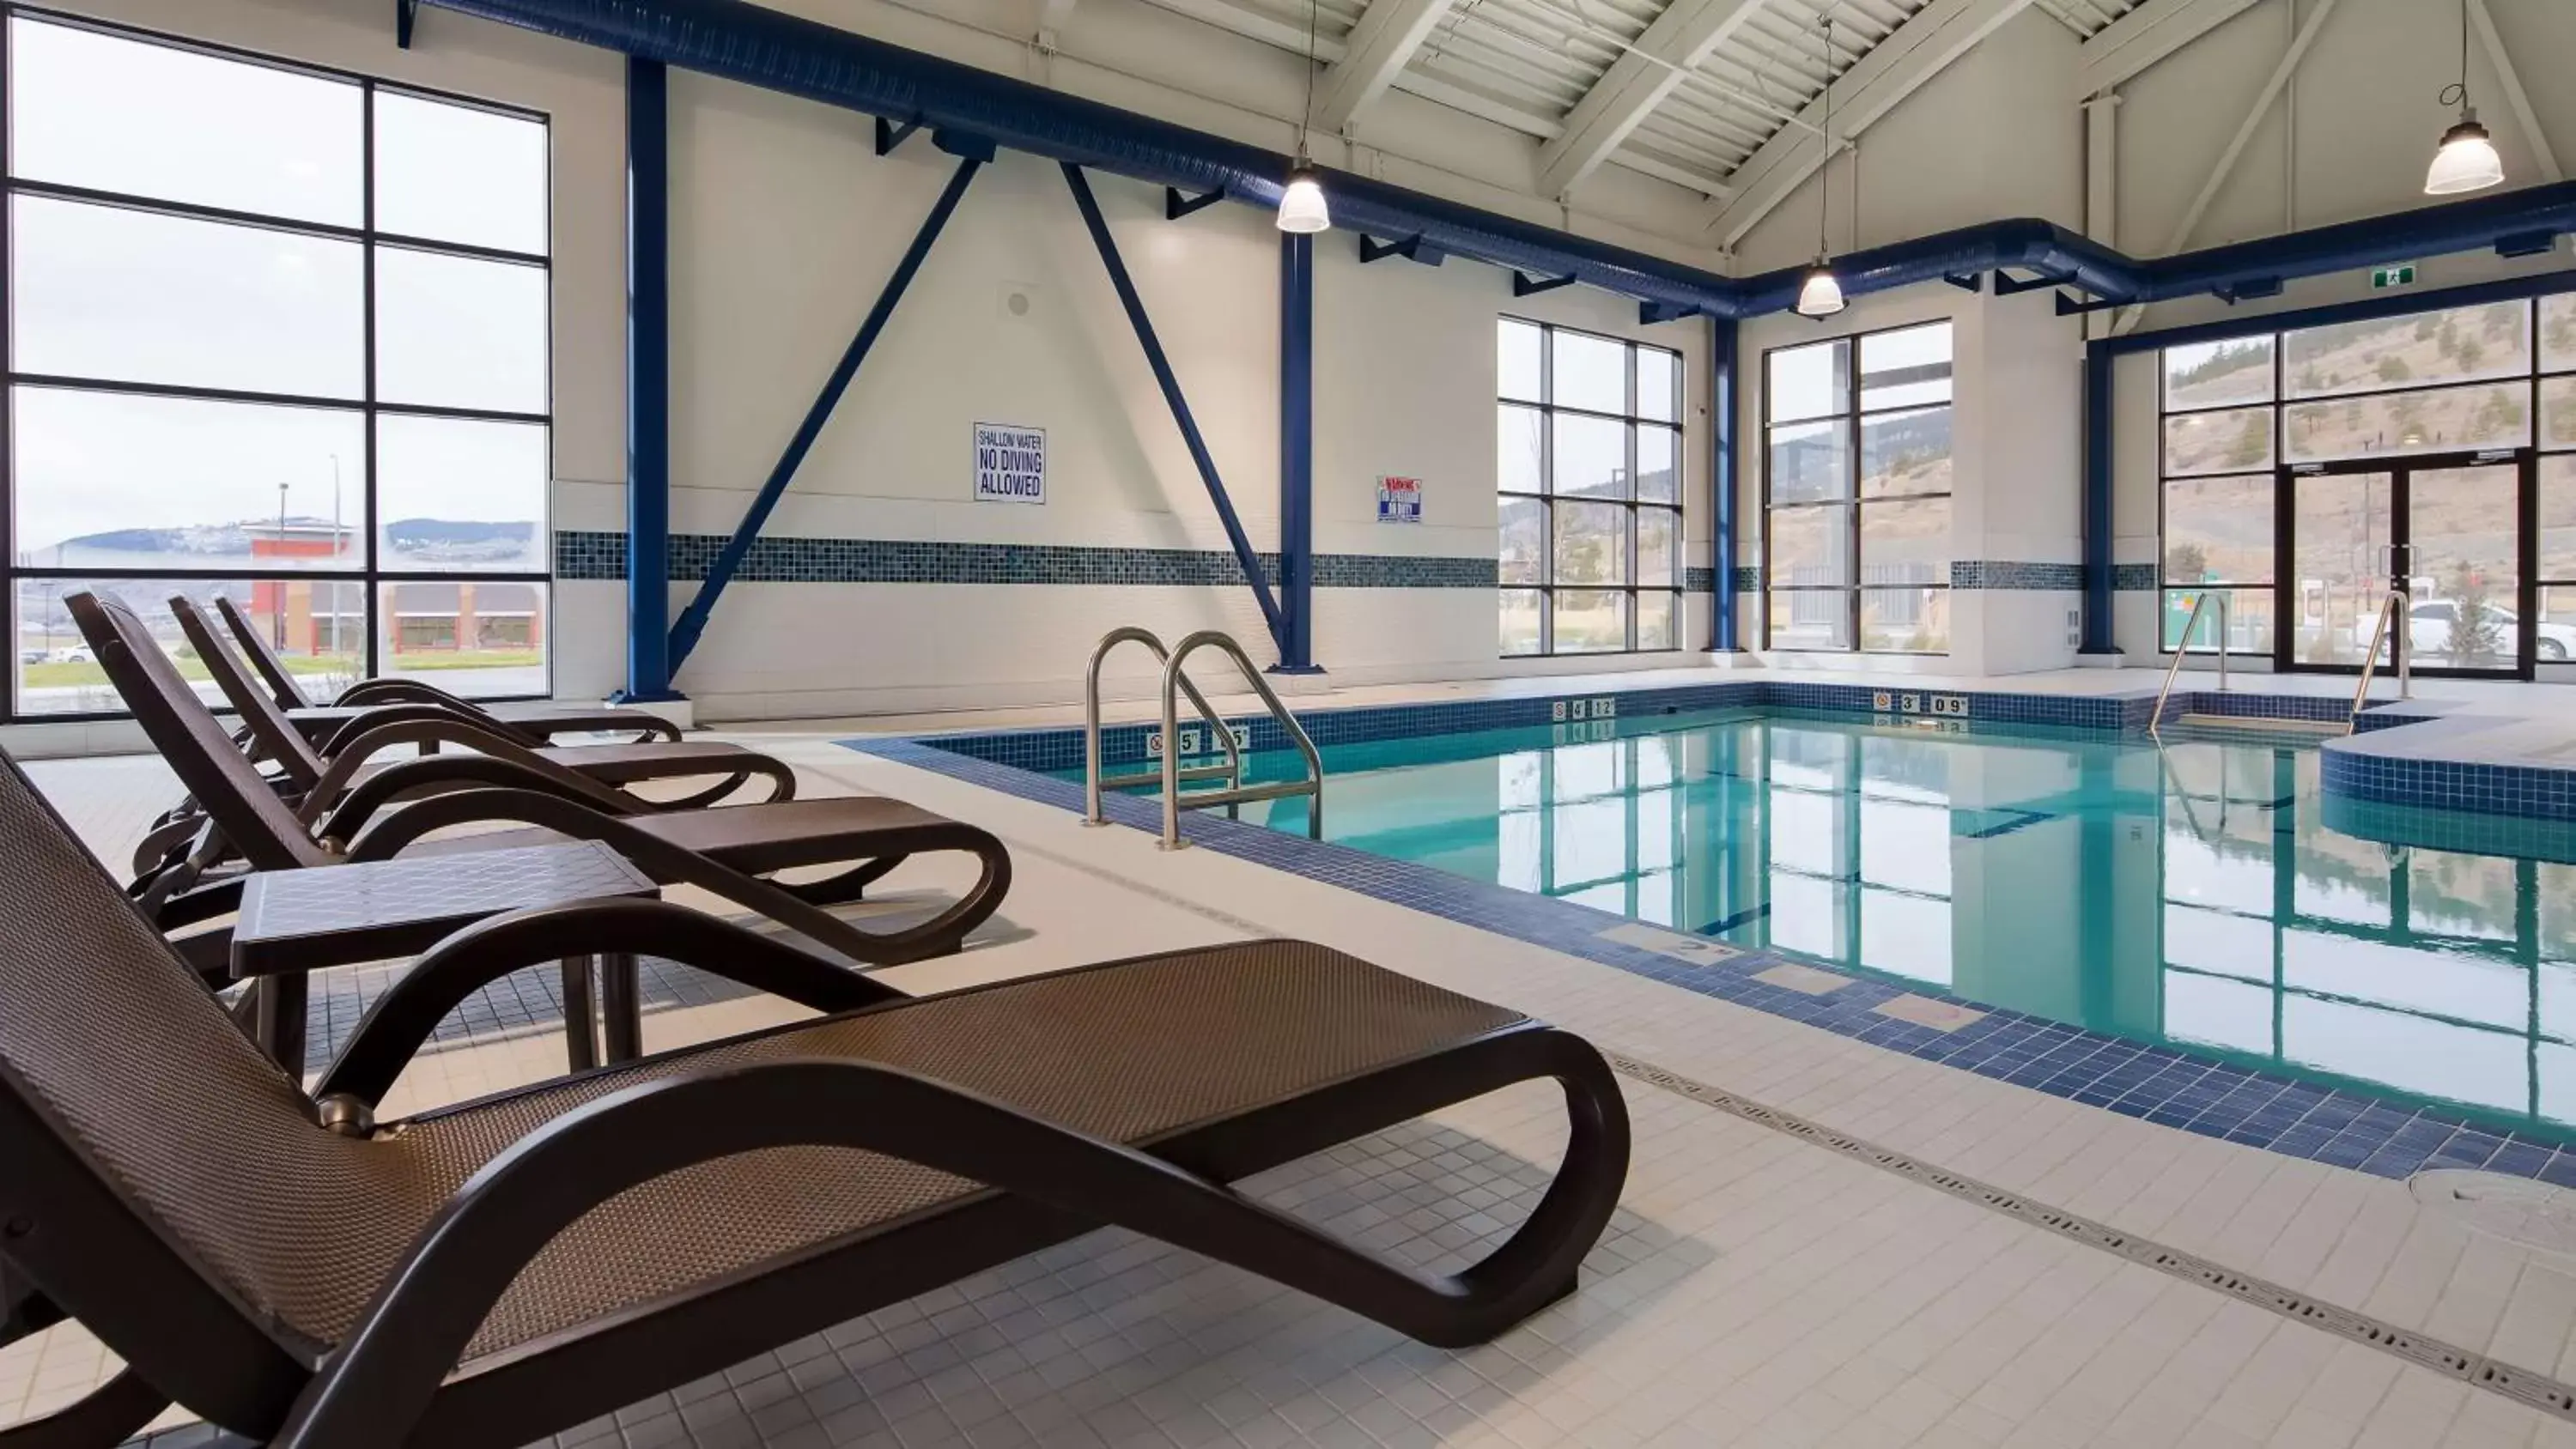 On site, Swimming Pool in Best Western Plus Merritt Hotel